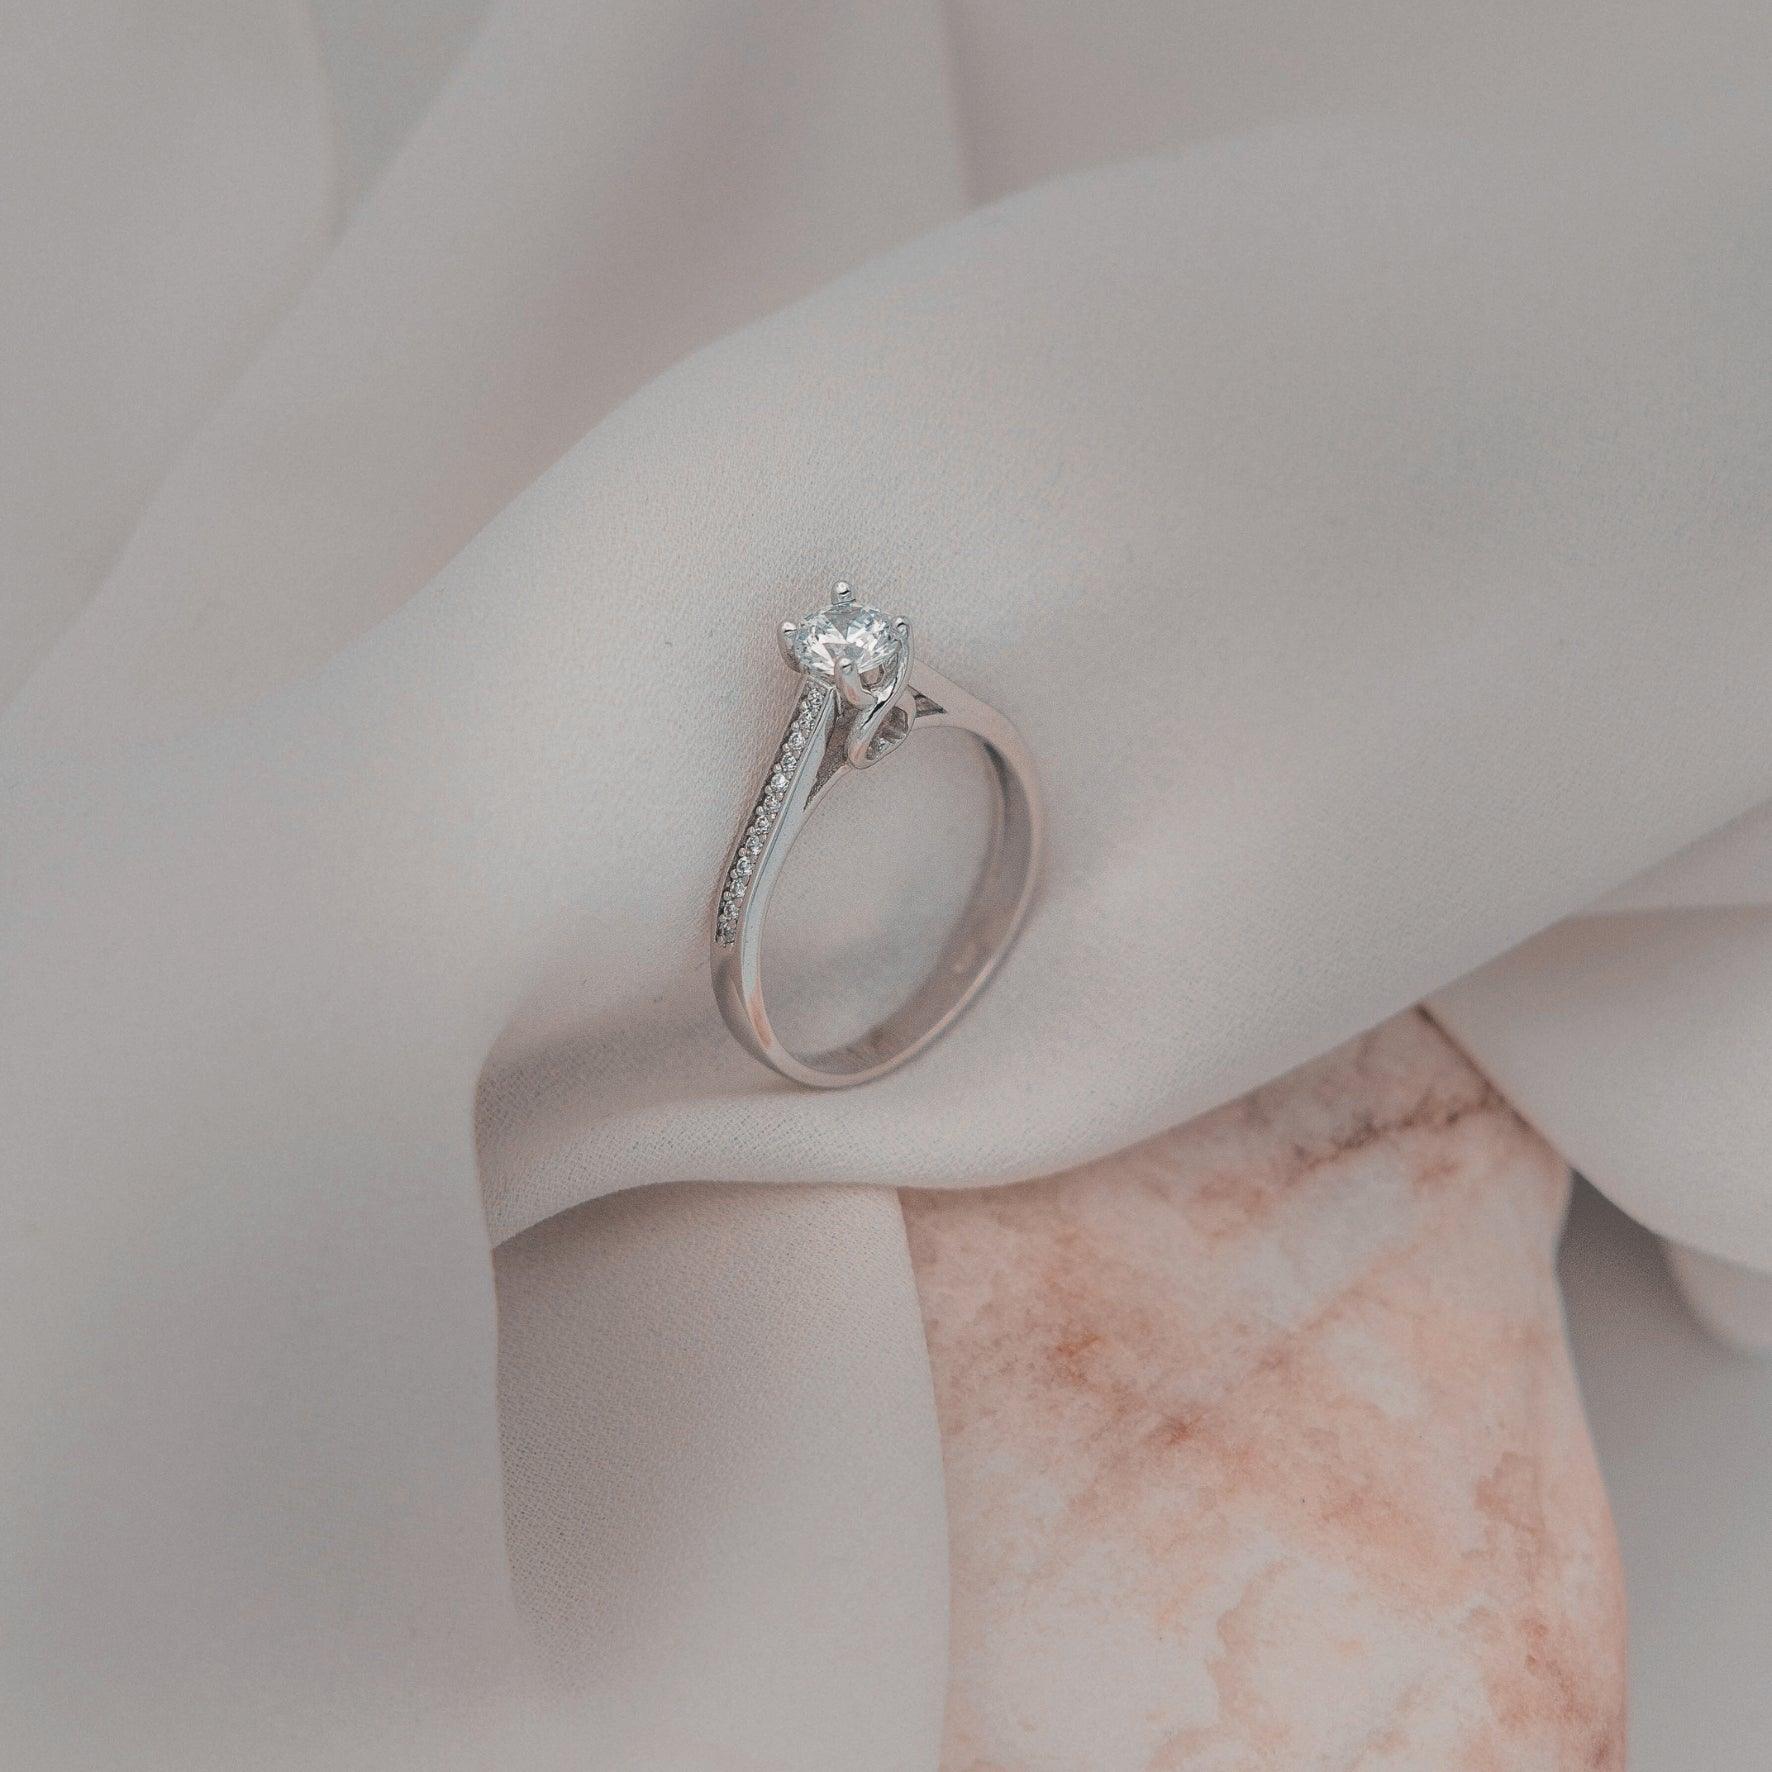 Μονόπετρο δαχτυλίδι με κεντρικό διαμάντι round cut και πλαϊνές πέτρες από μικρότερα διαμάντια, κατασκευασμένο από λευκόχρυσο.